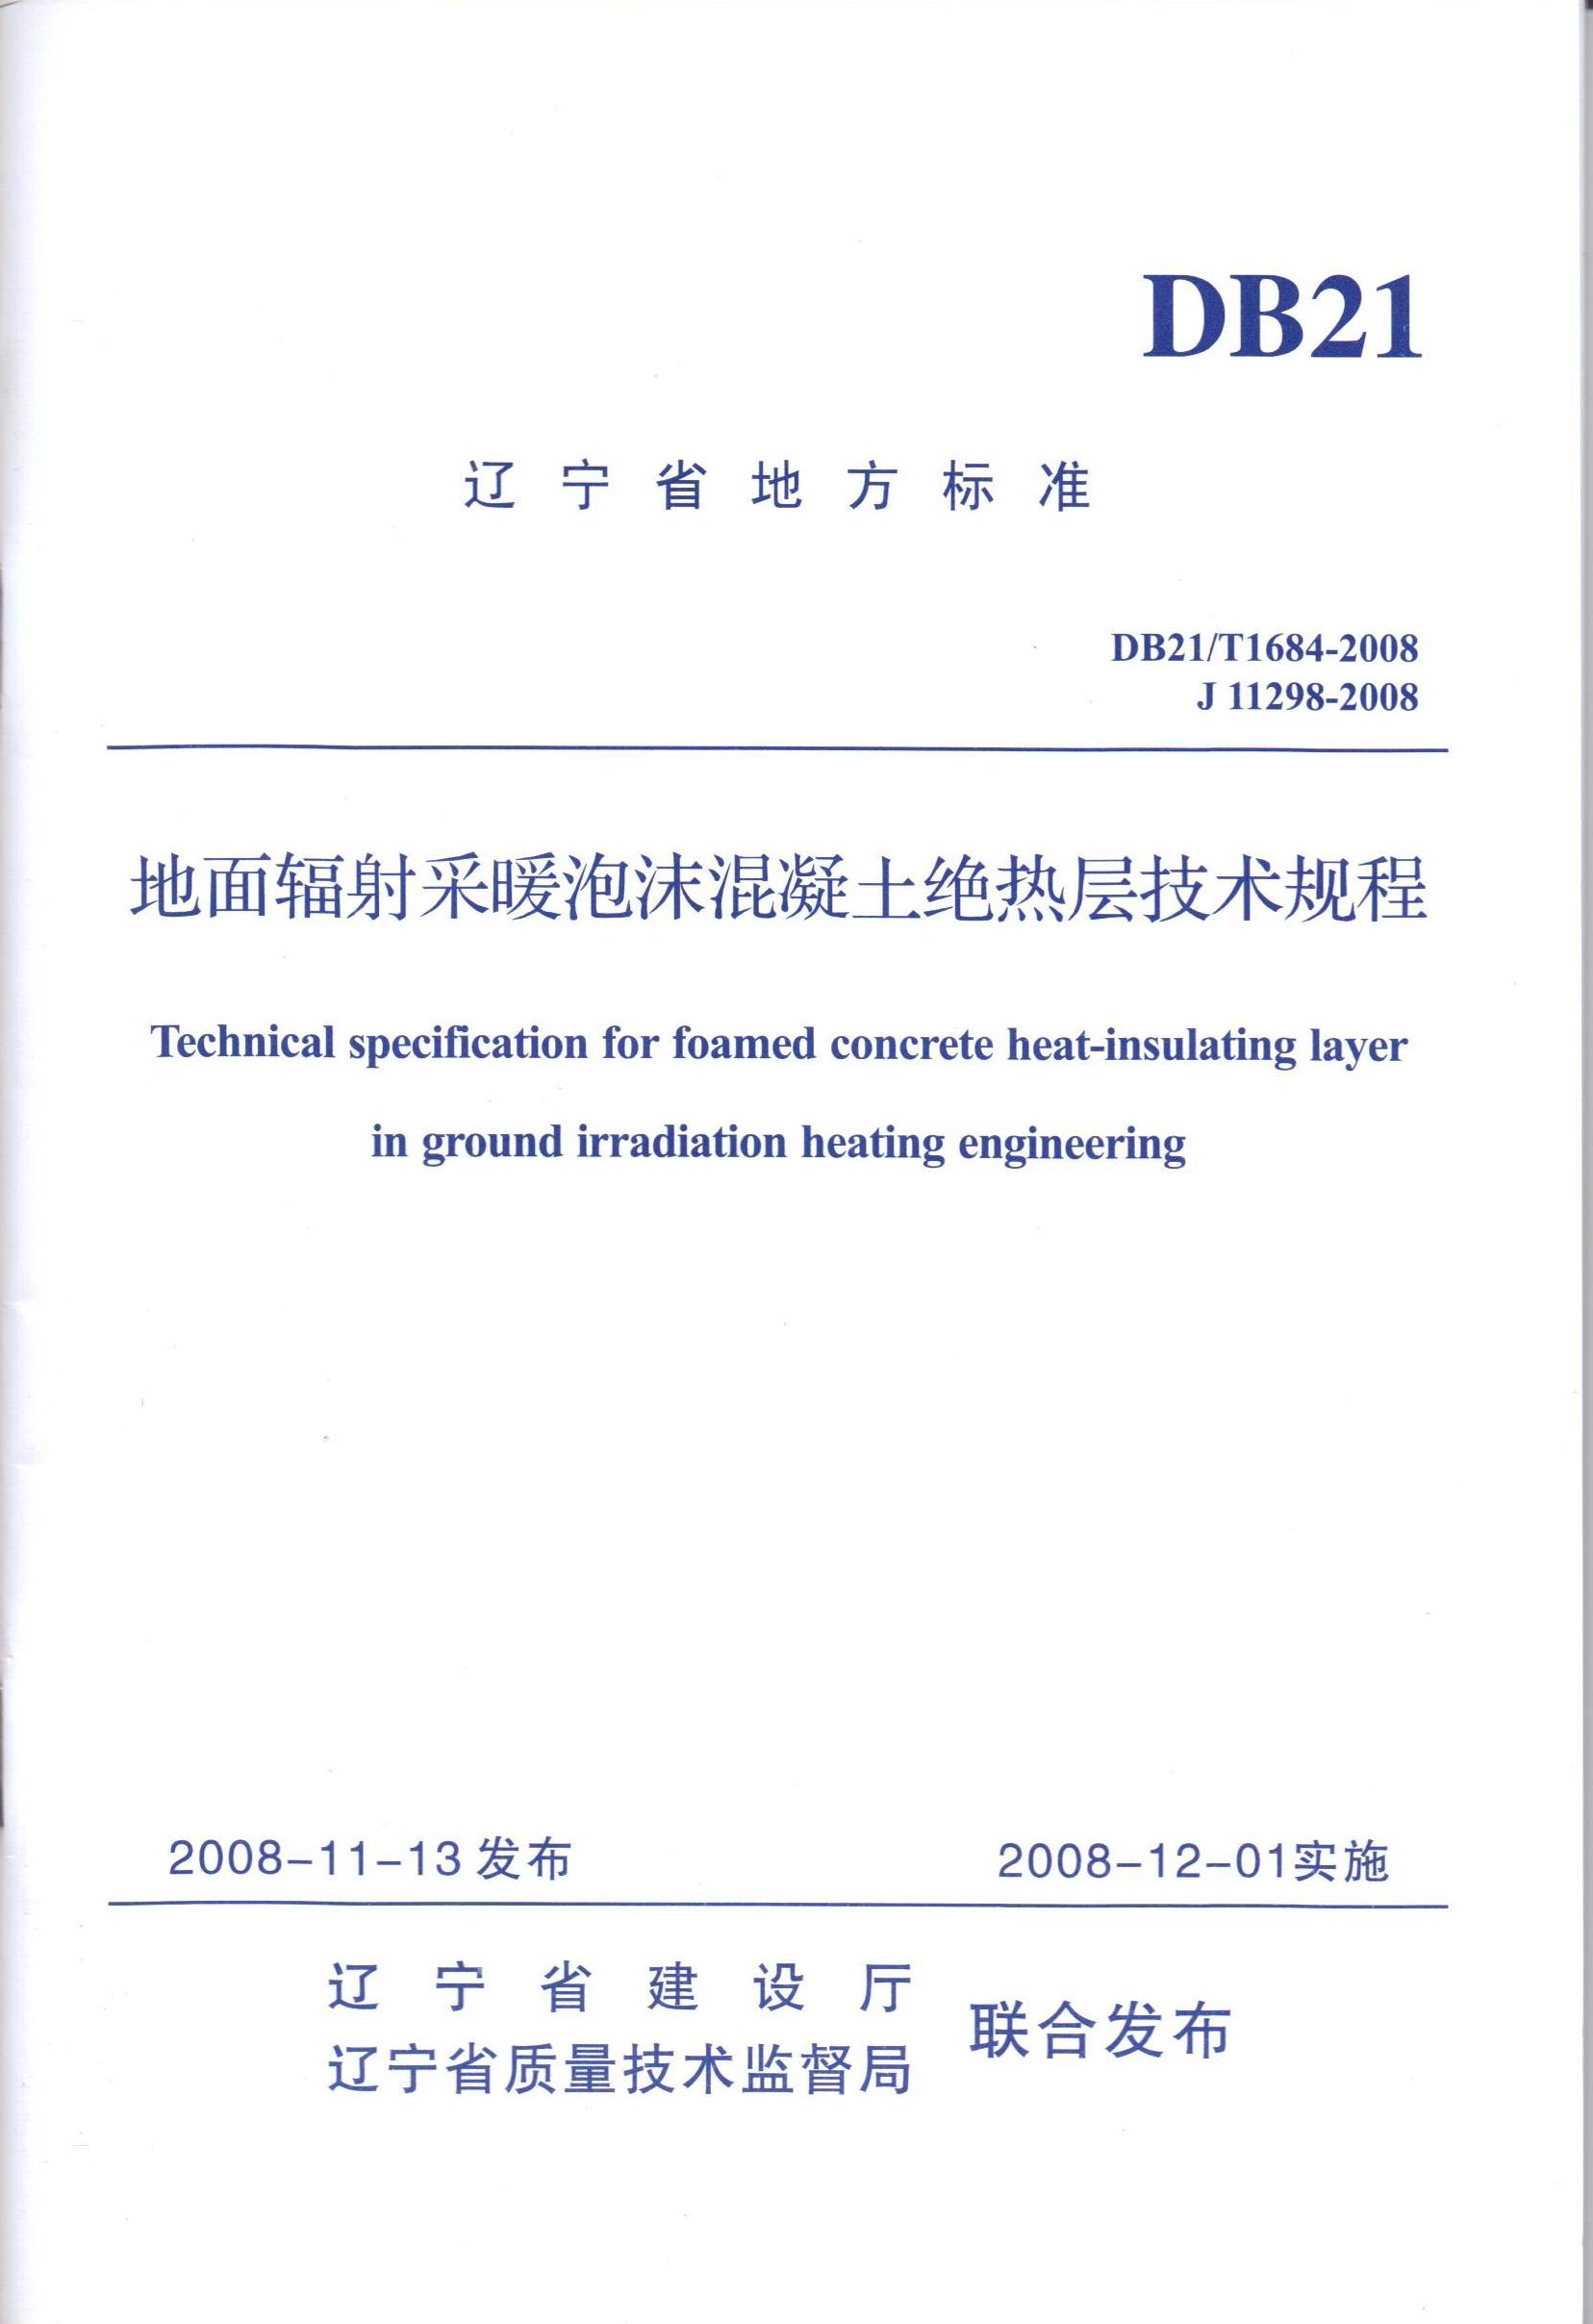 辽宁省地方标准《地面辐射采暖泡沫混凝土绝热层技术规程》